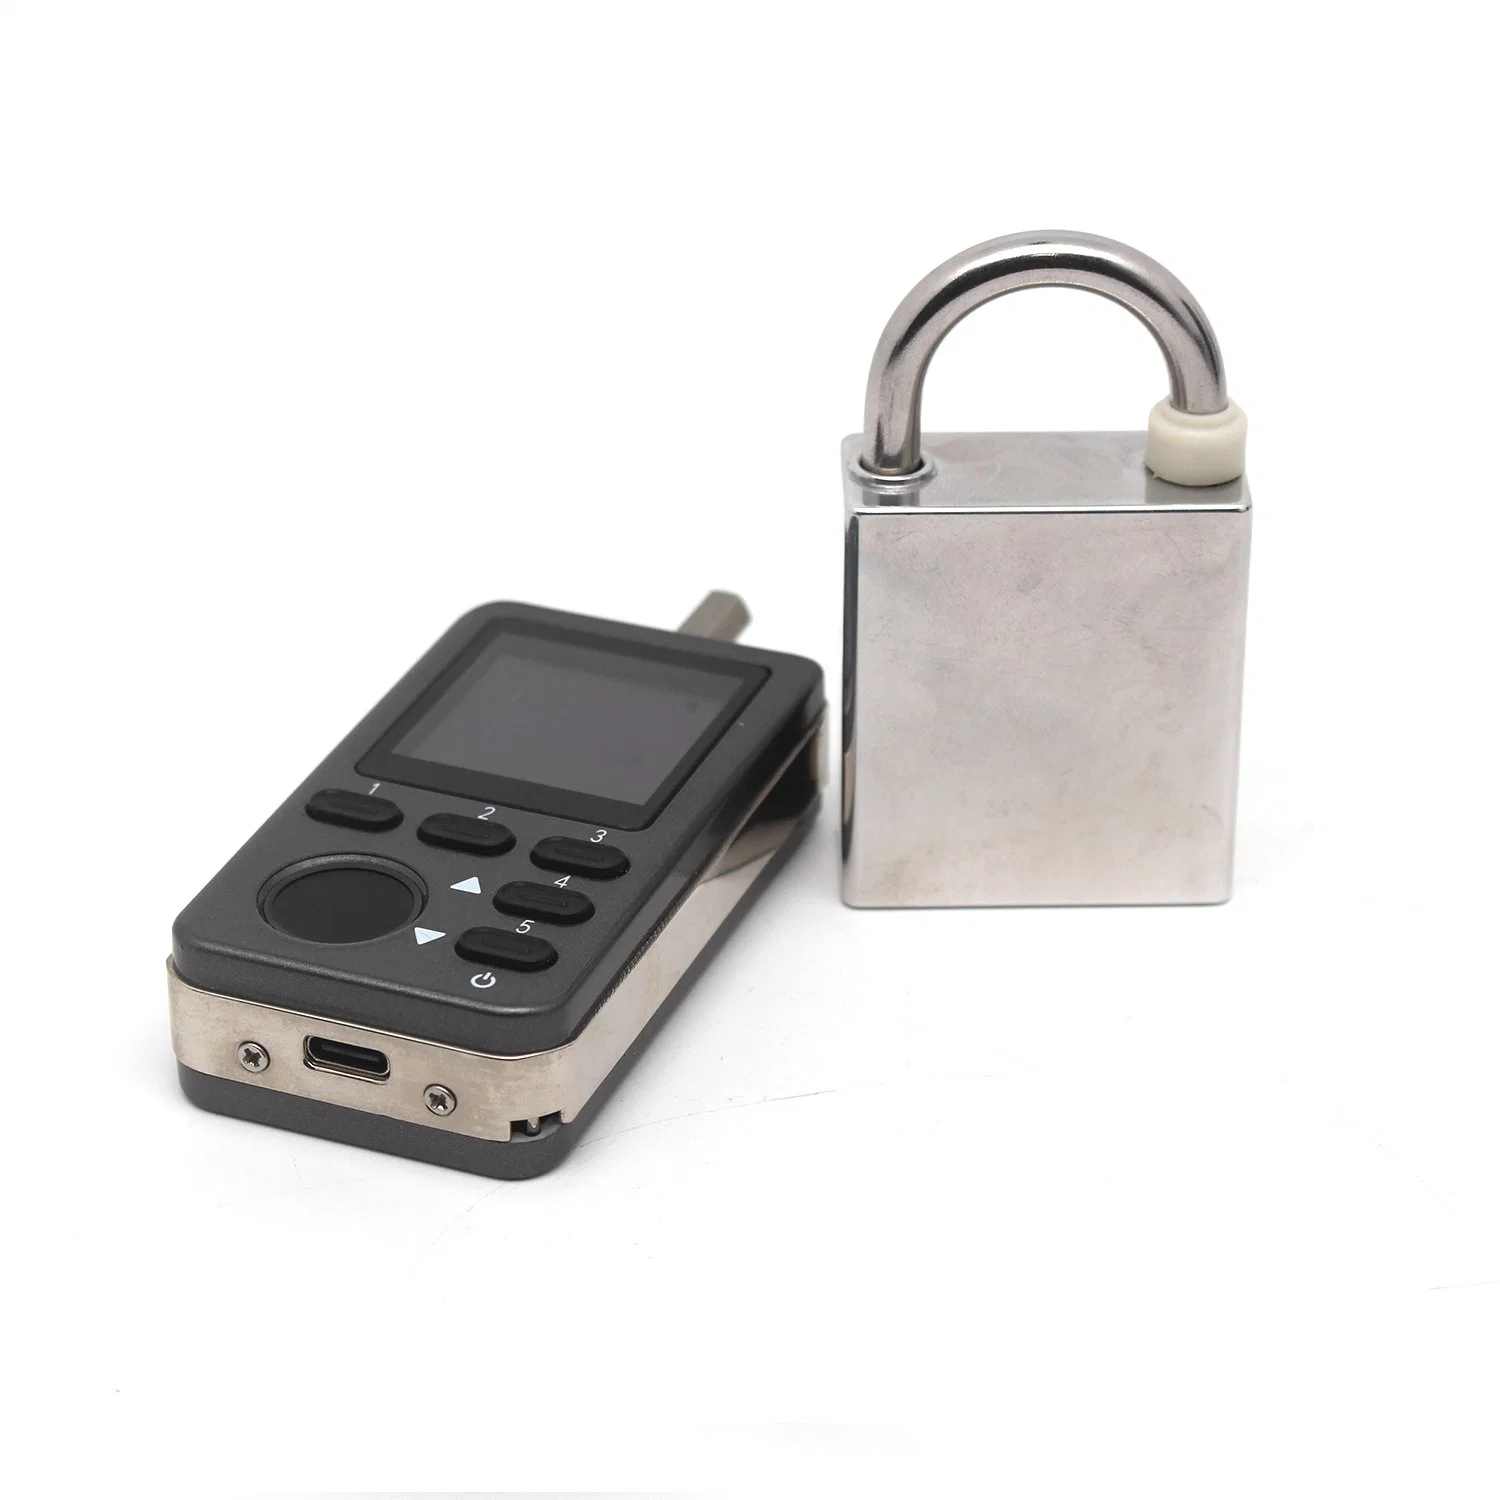 Nuevo diseño Master Key inteligente sus 304 Smart Lock con Software gratuito para puerta de incendios